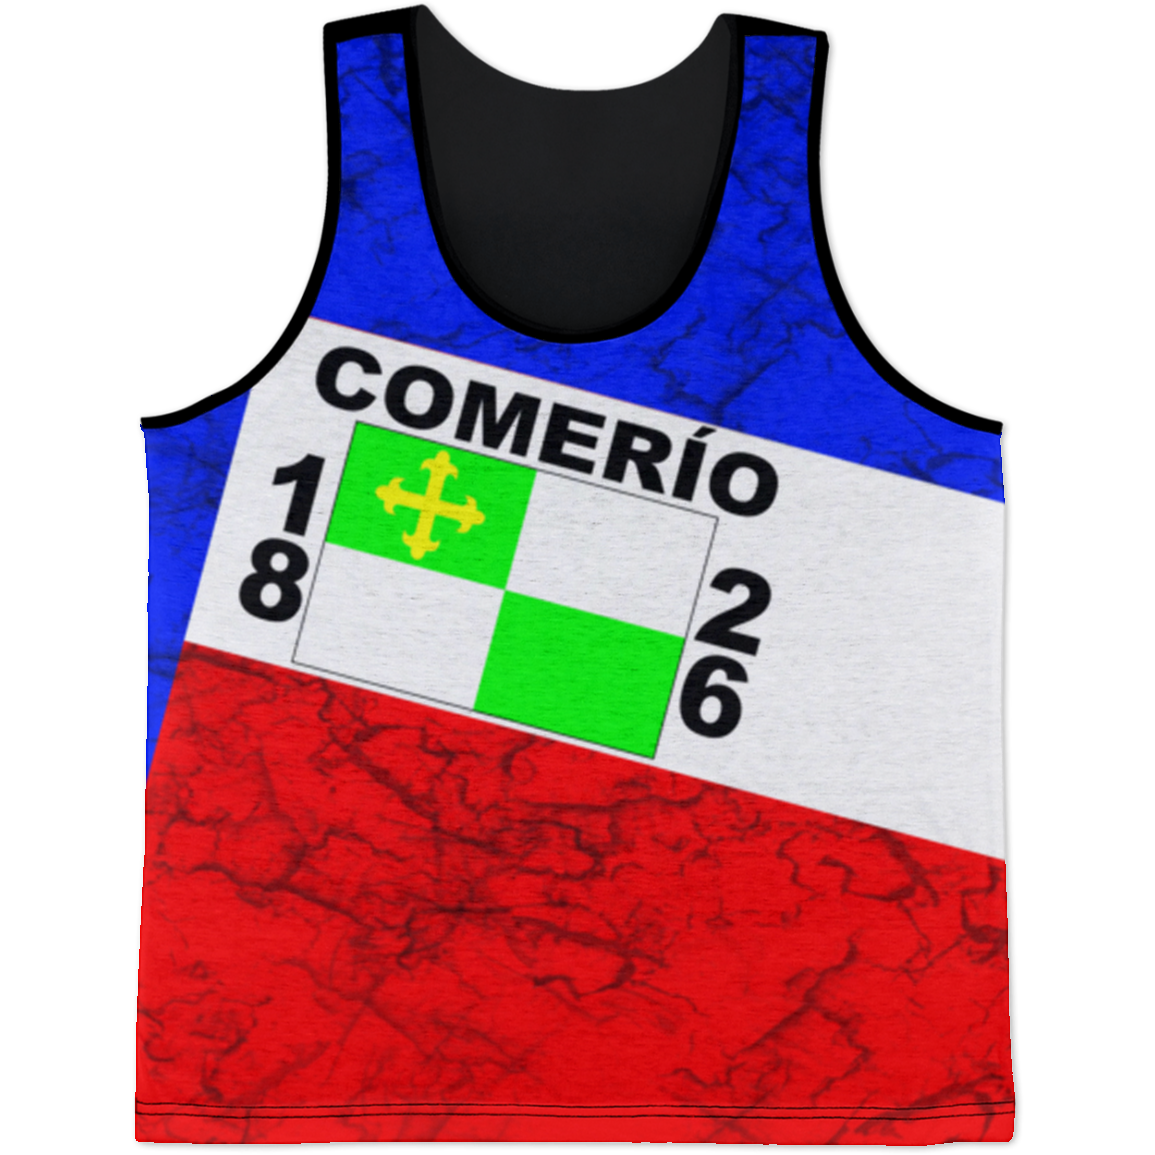 Comerio Tank Top - Puerto Rican Pride